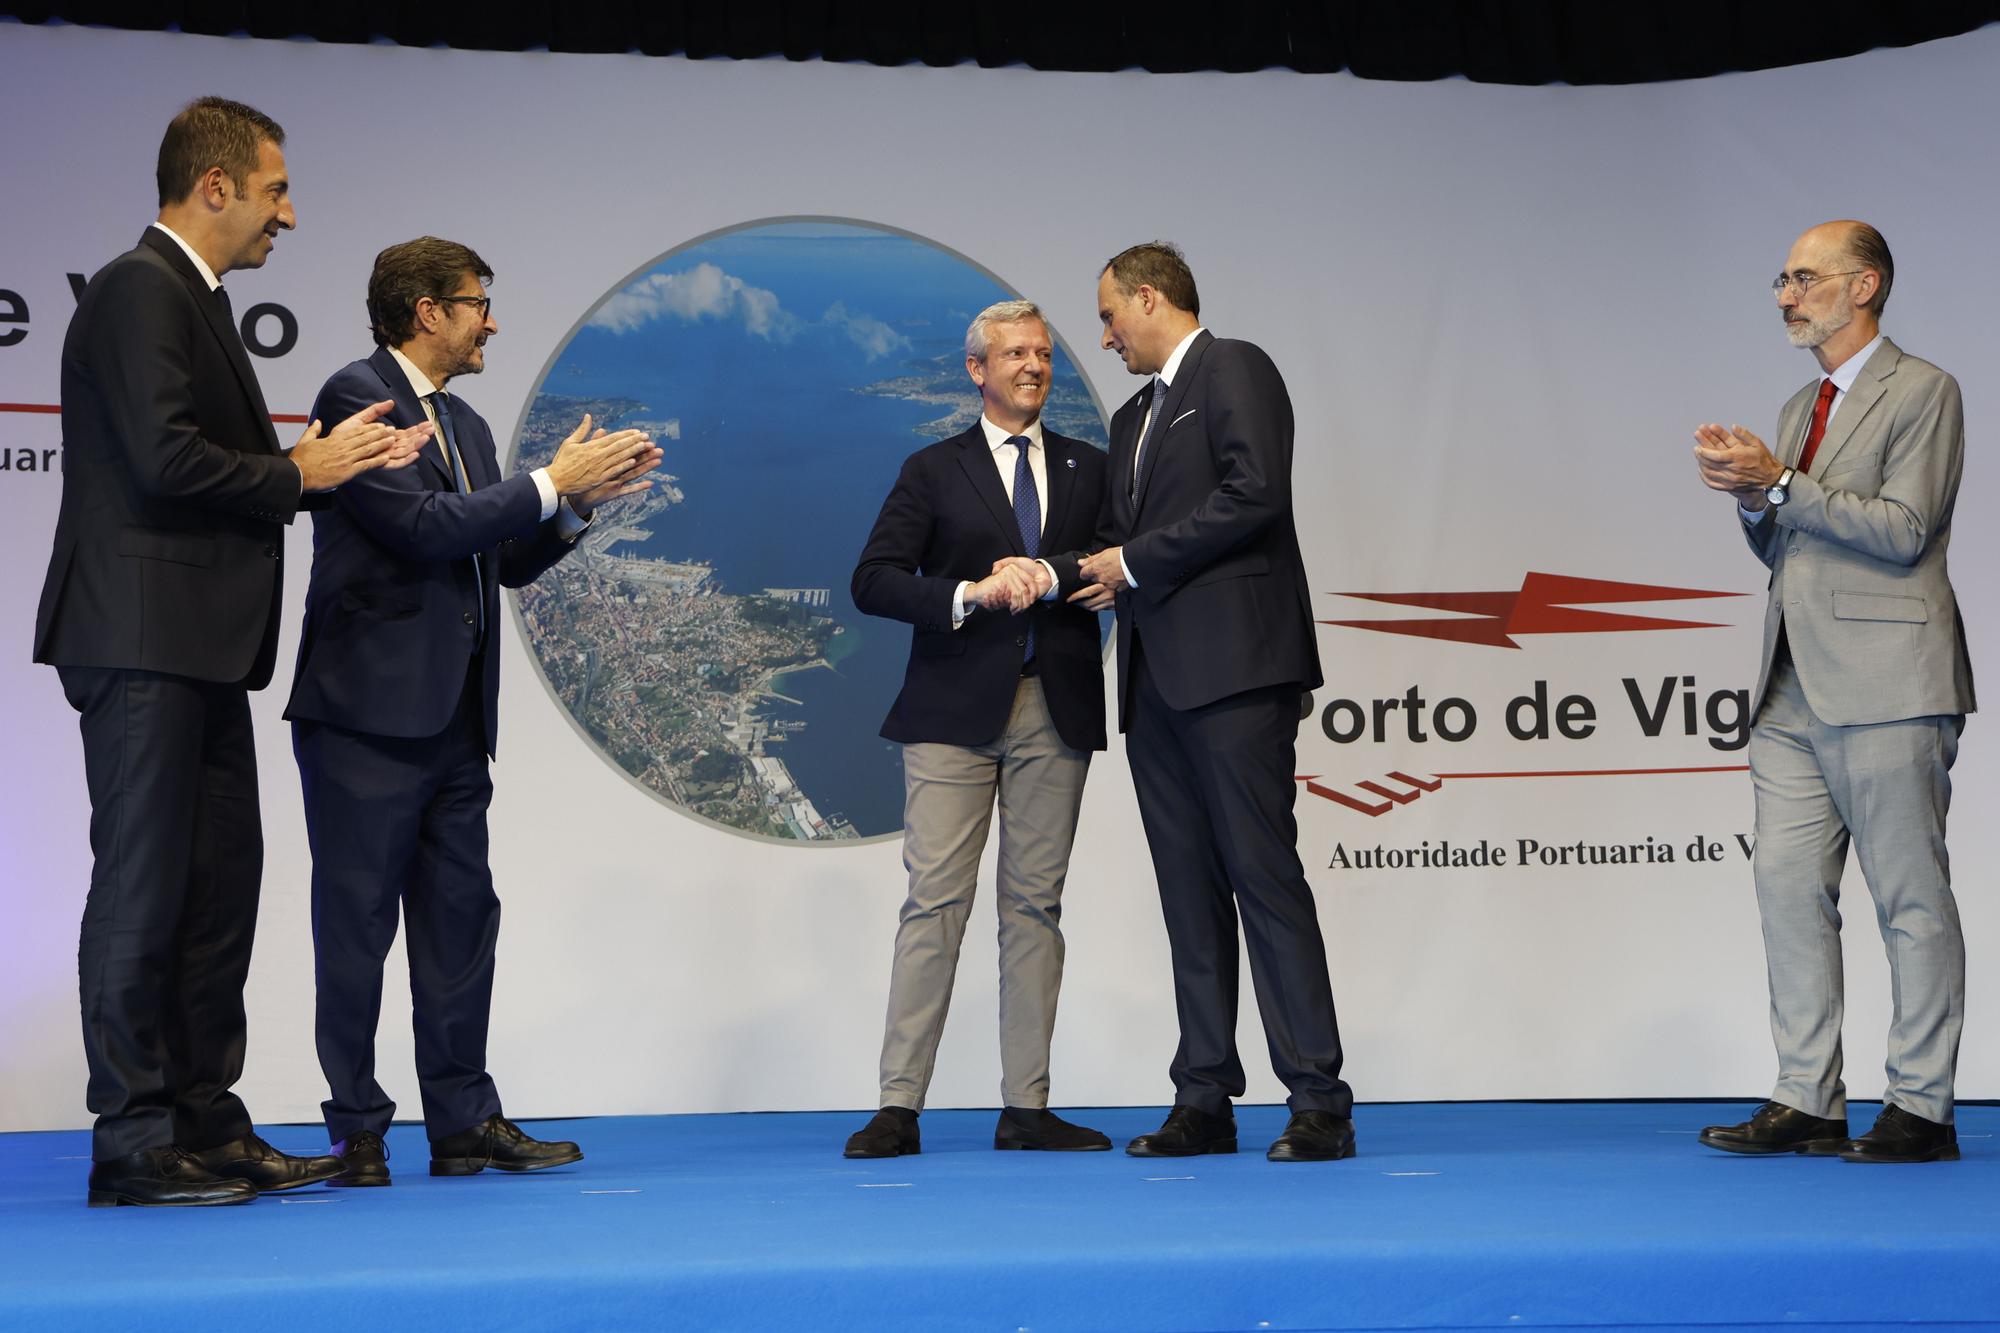 Carlos Botana toma posesión como presidente del Puerto de Vigo